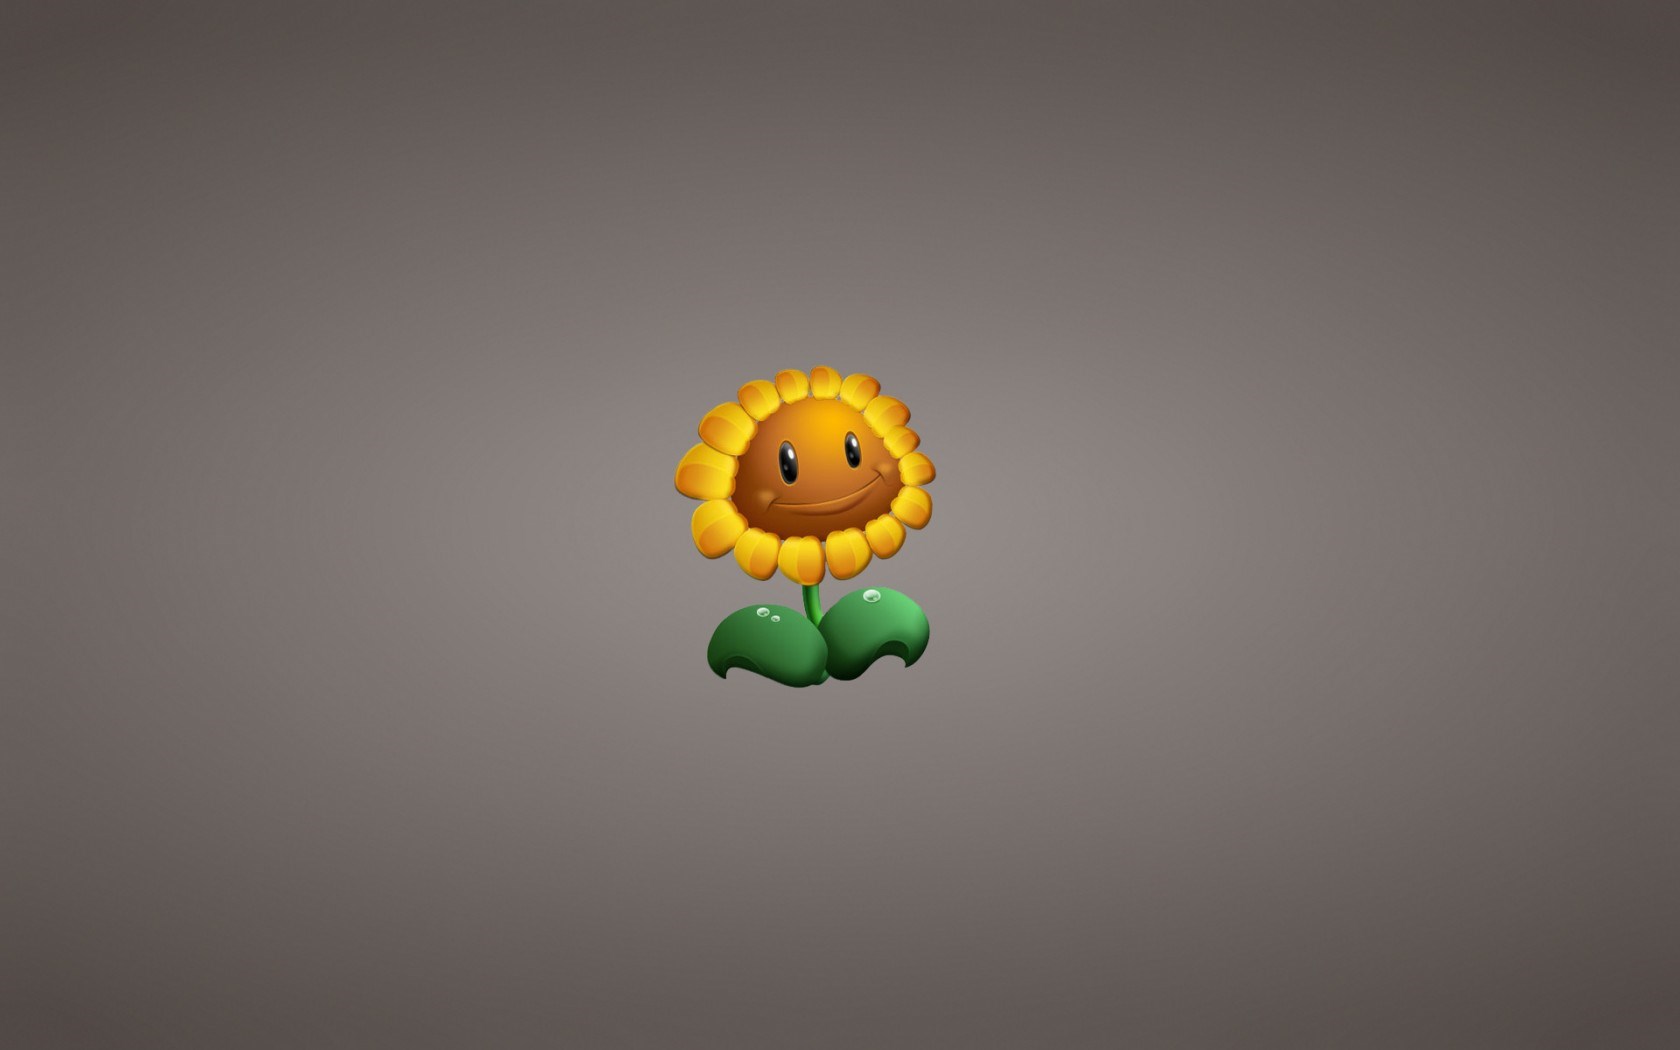 Plants Vs Zombies Garden Warfare Sunflower Game Art - Plants Vs Zombies Sunflower , HD Wallpaper & Backgrounds